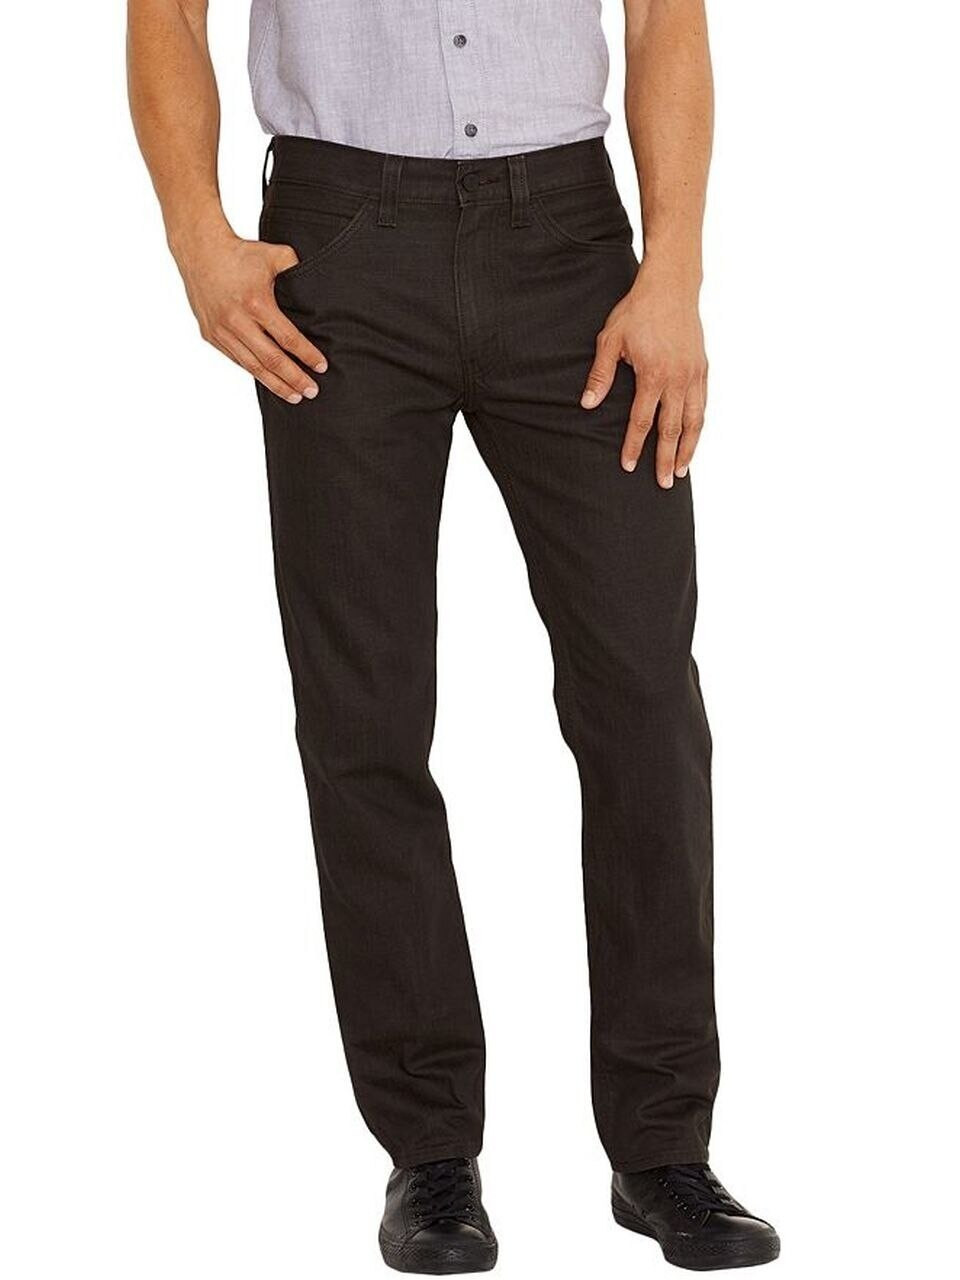 levis 517 black bootcut jeans